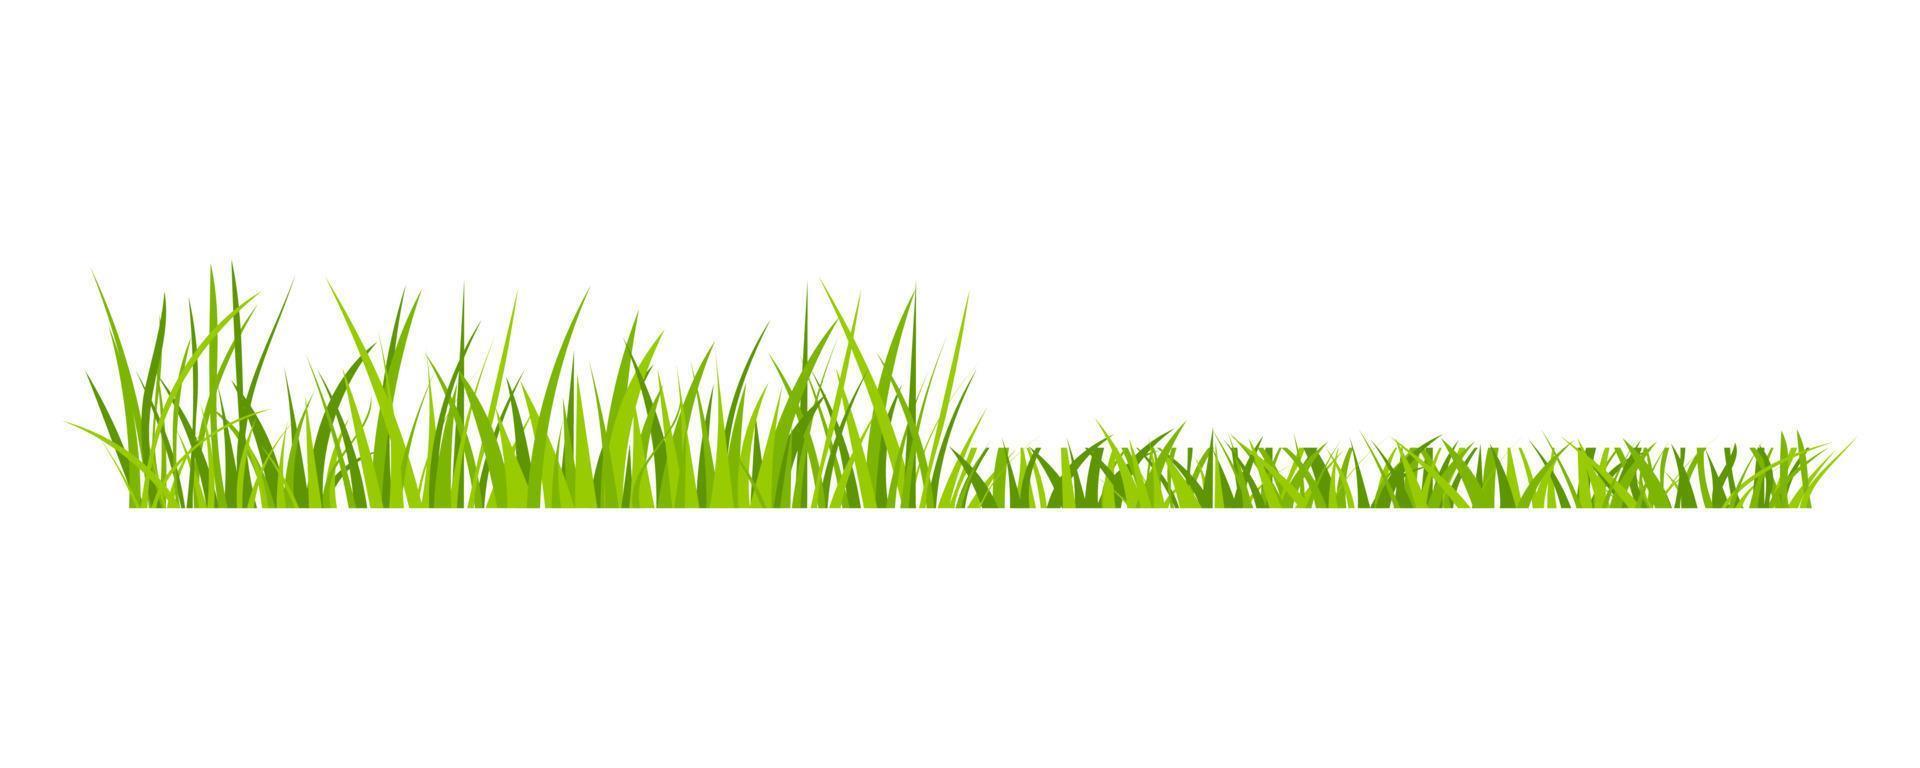 groen grasland gazon veld grens vlakke stijl ontwerp vectorillustratie geïsoleerd op een witte achtergrond. vector